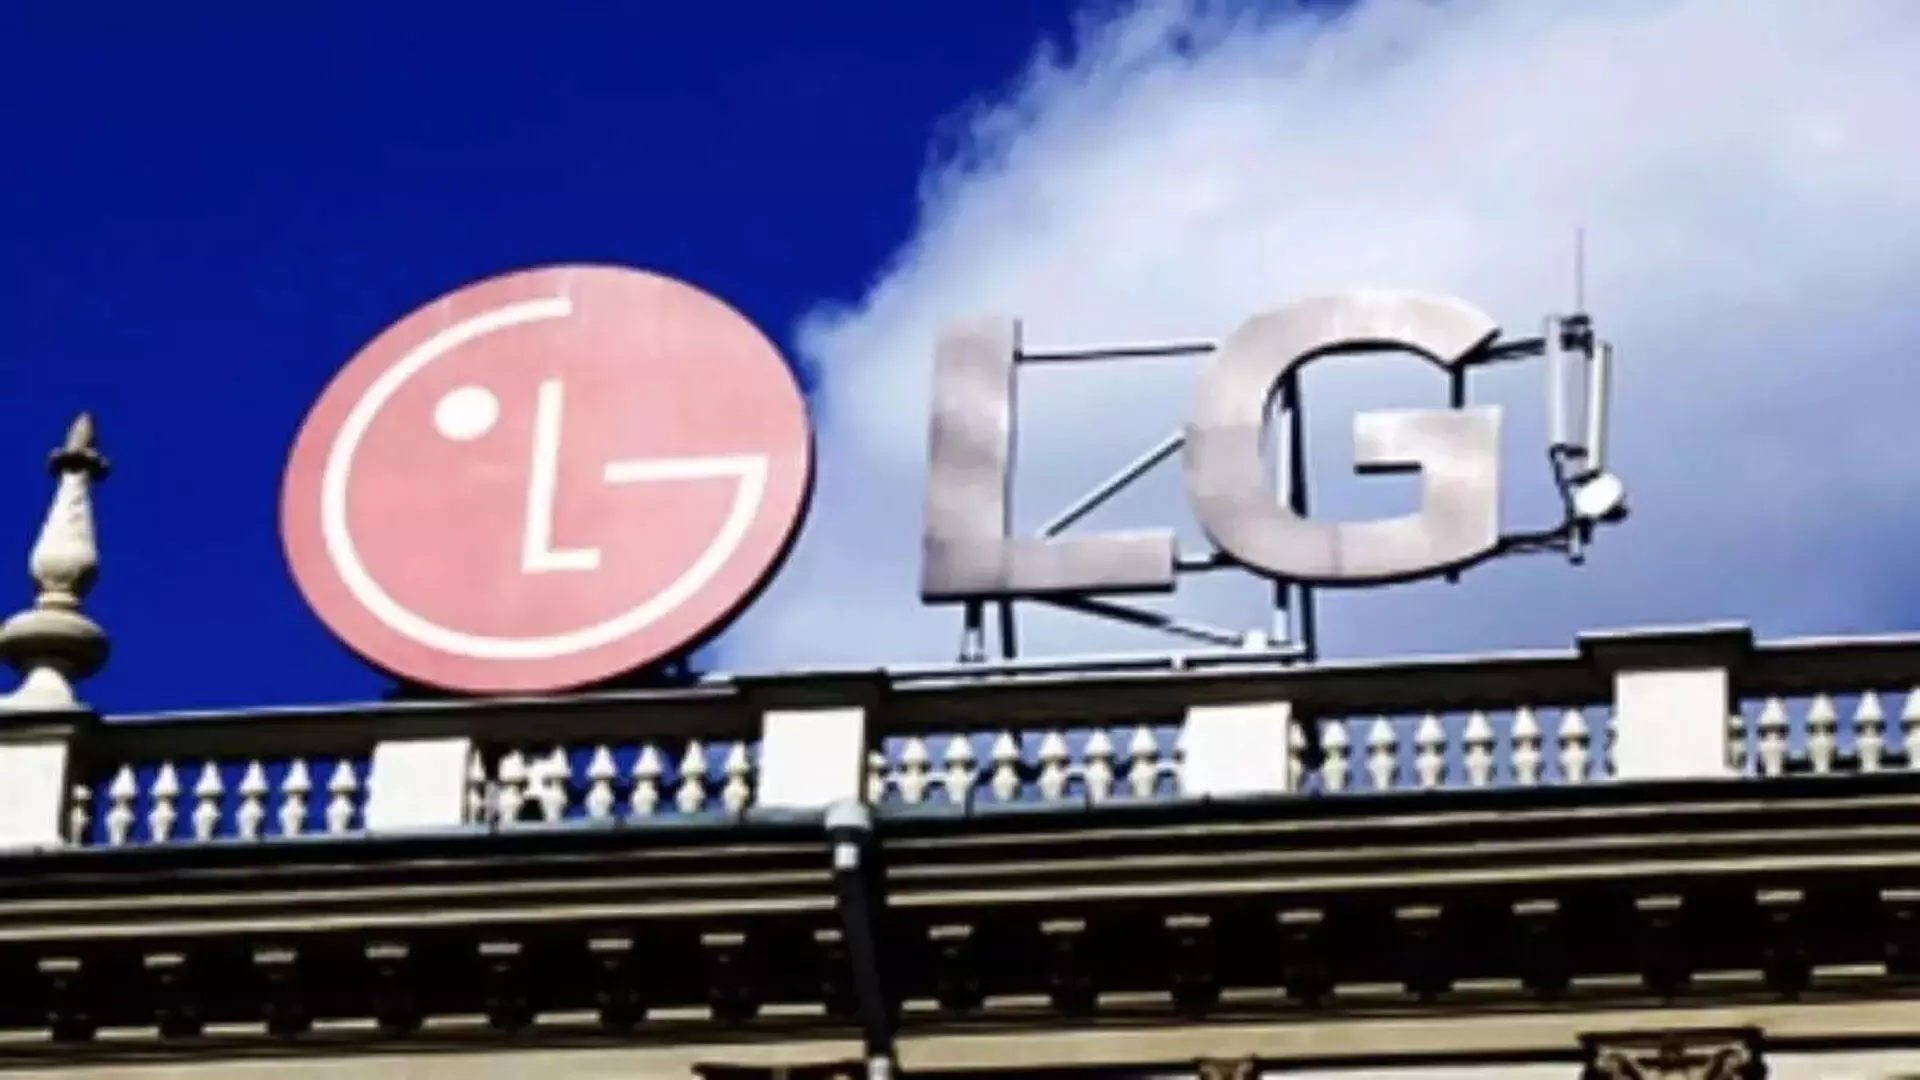 LG ने अमेरिकी स्टार्टअप बियर रोबोटिक्स में 60 मिलियन डॉलर का निवेश किया